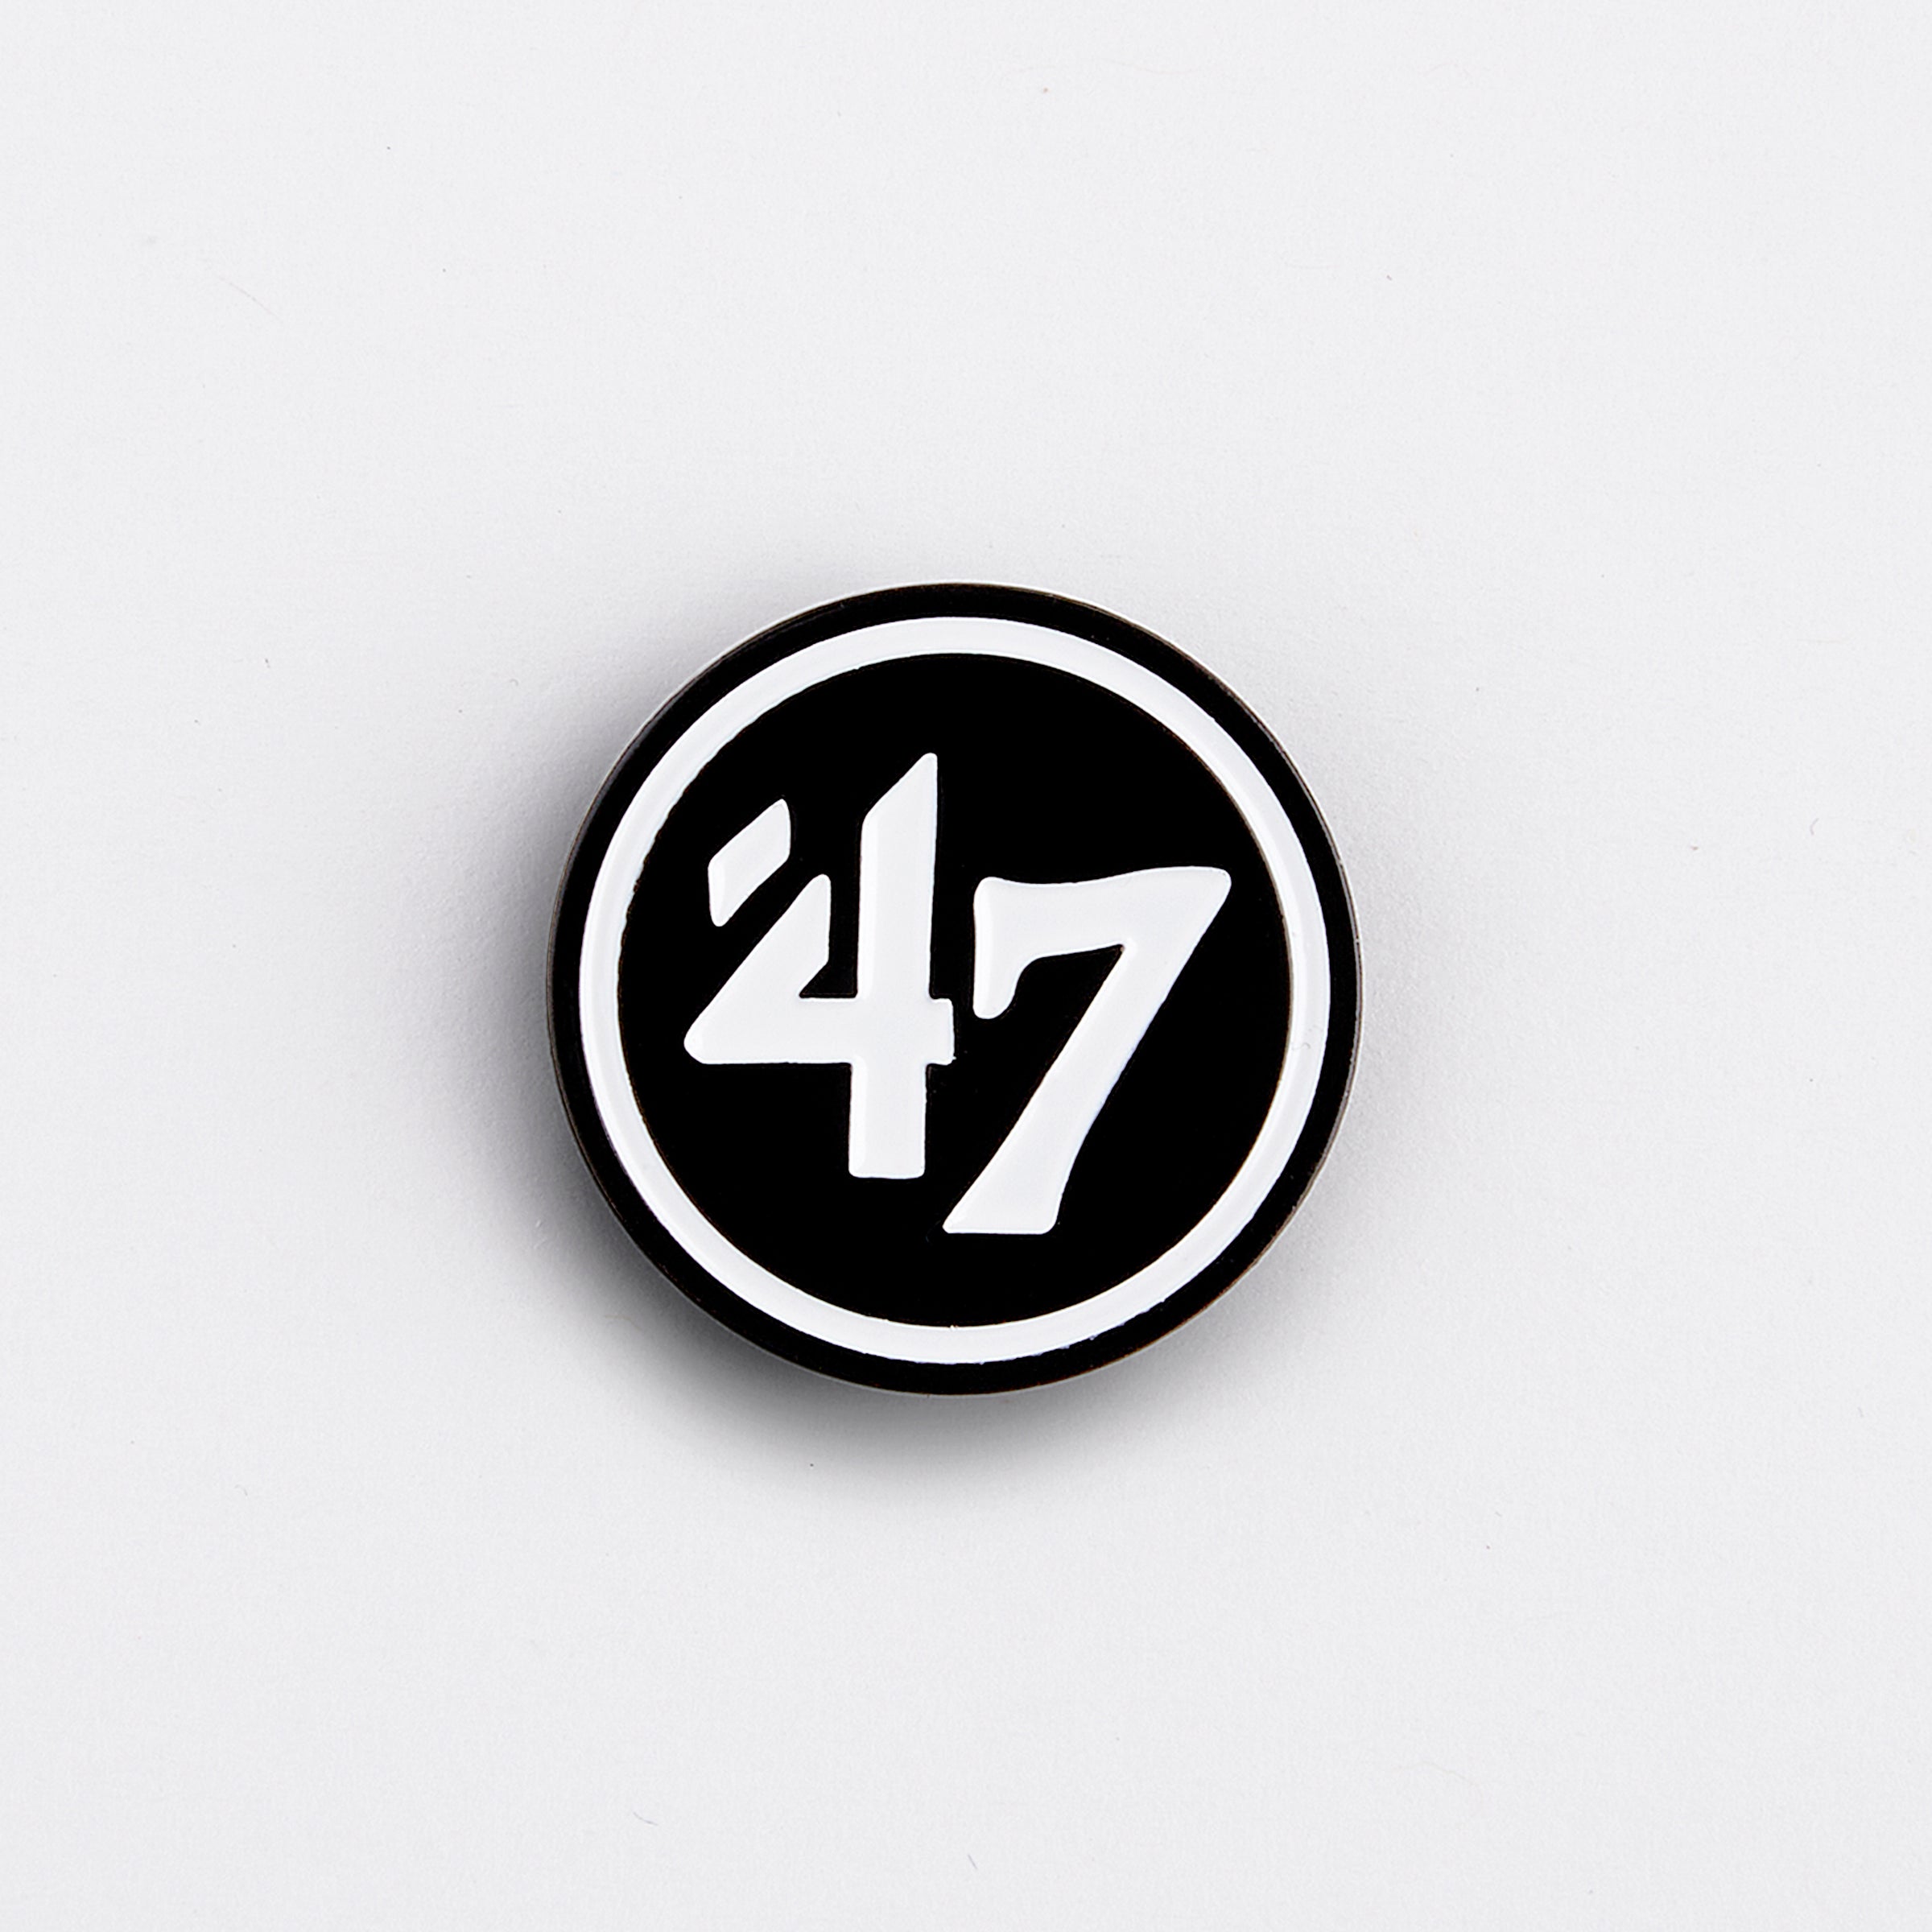 '47 Logo Pin